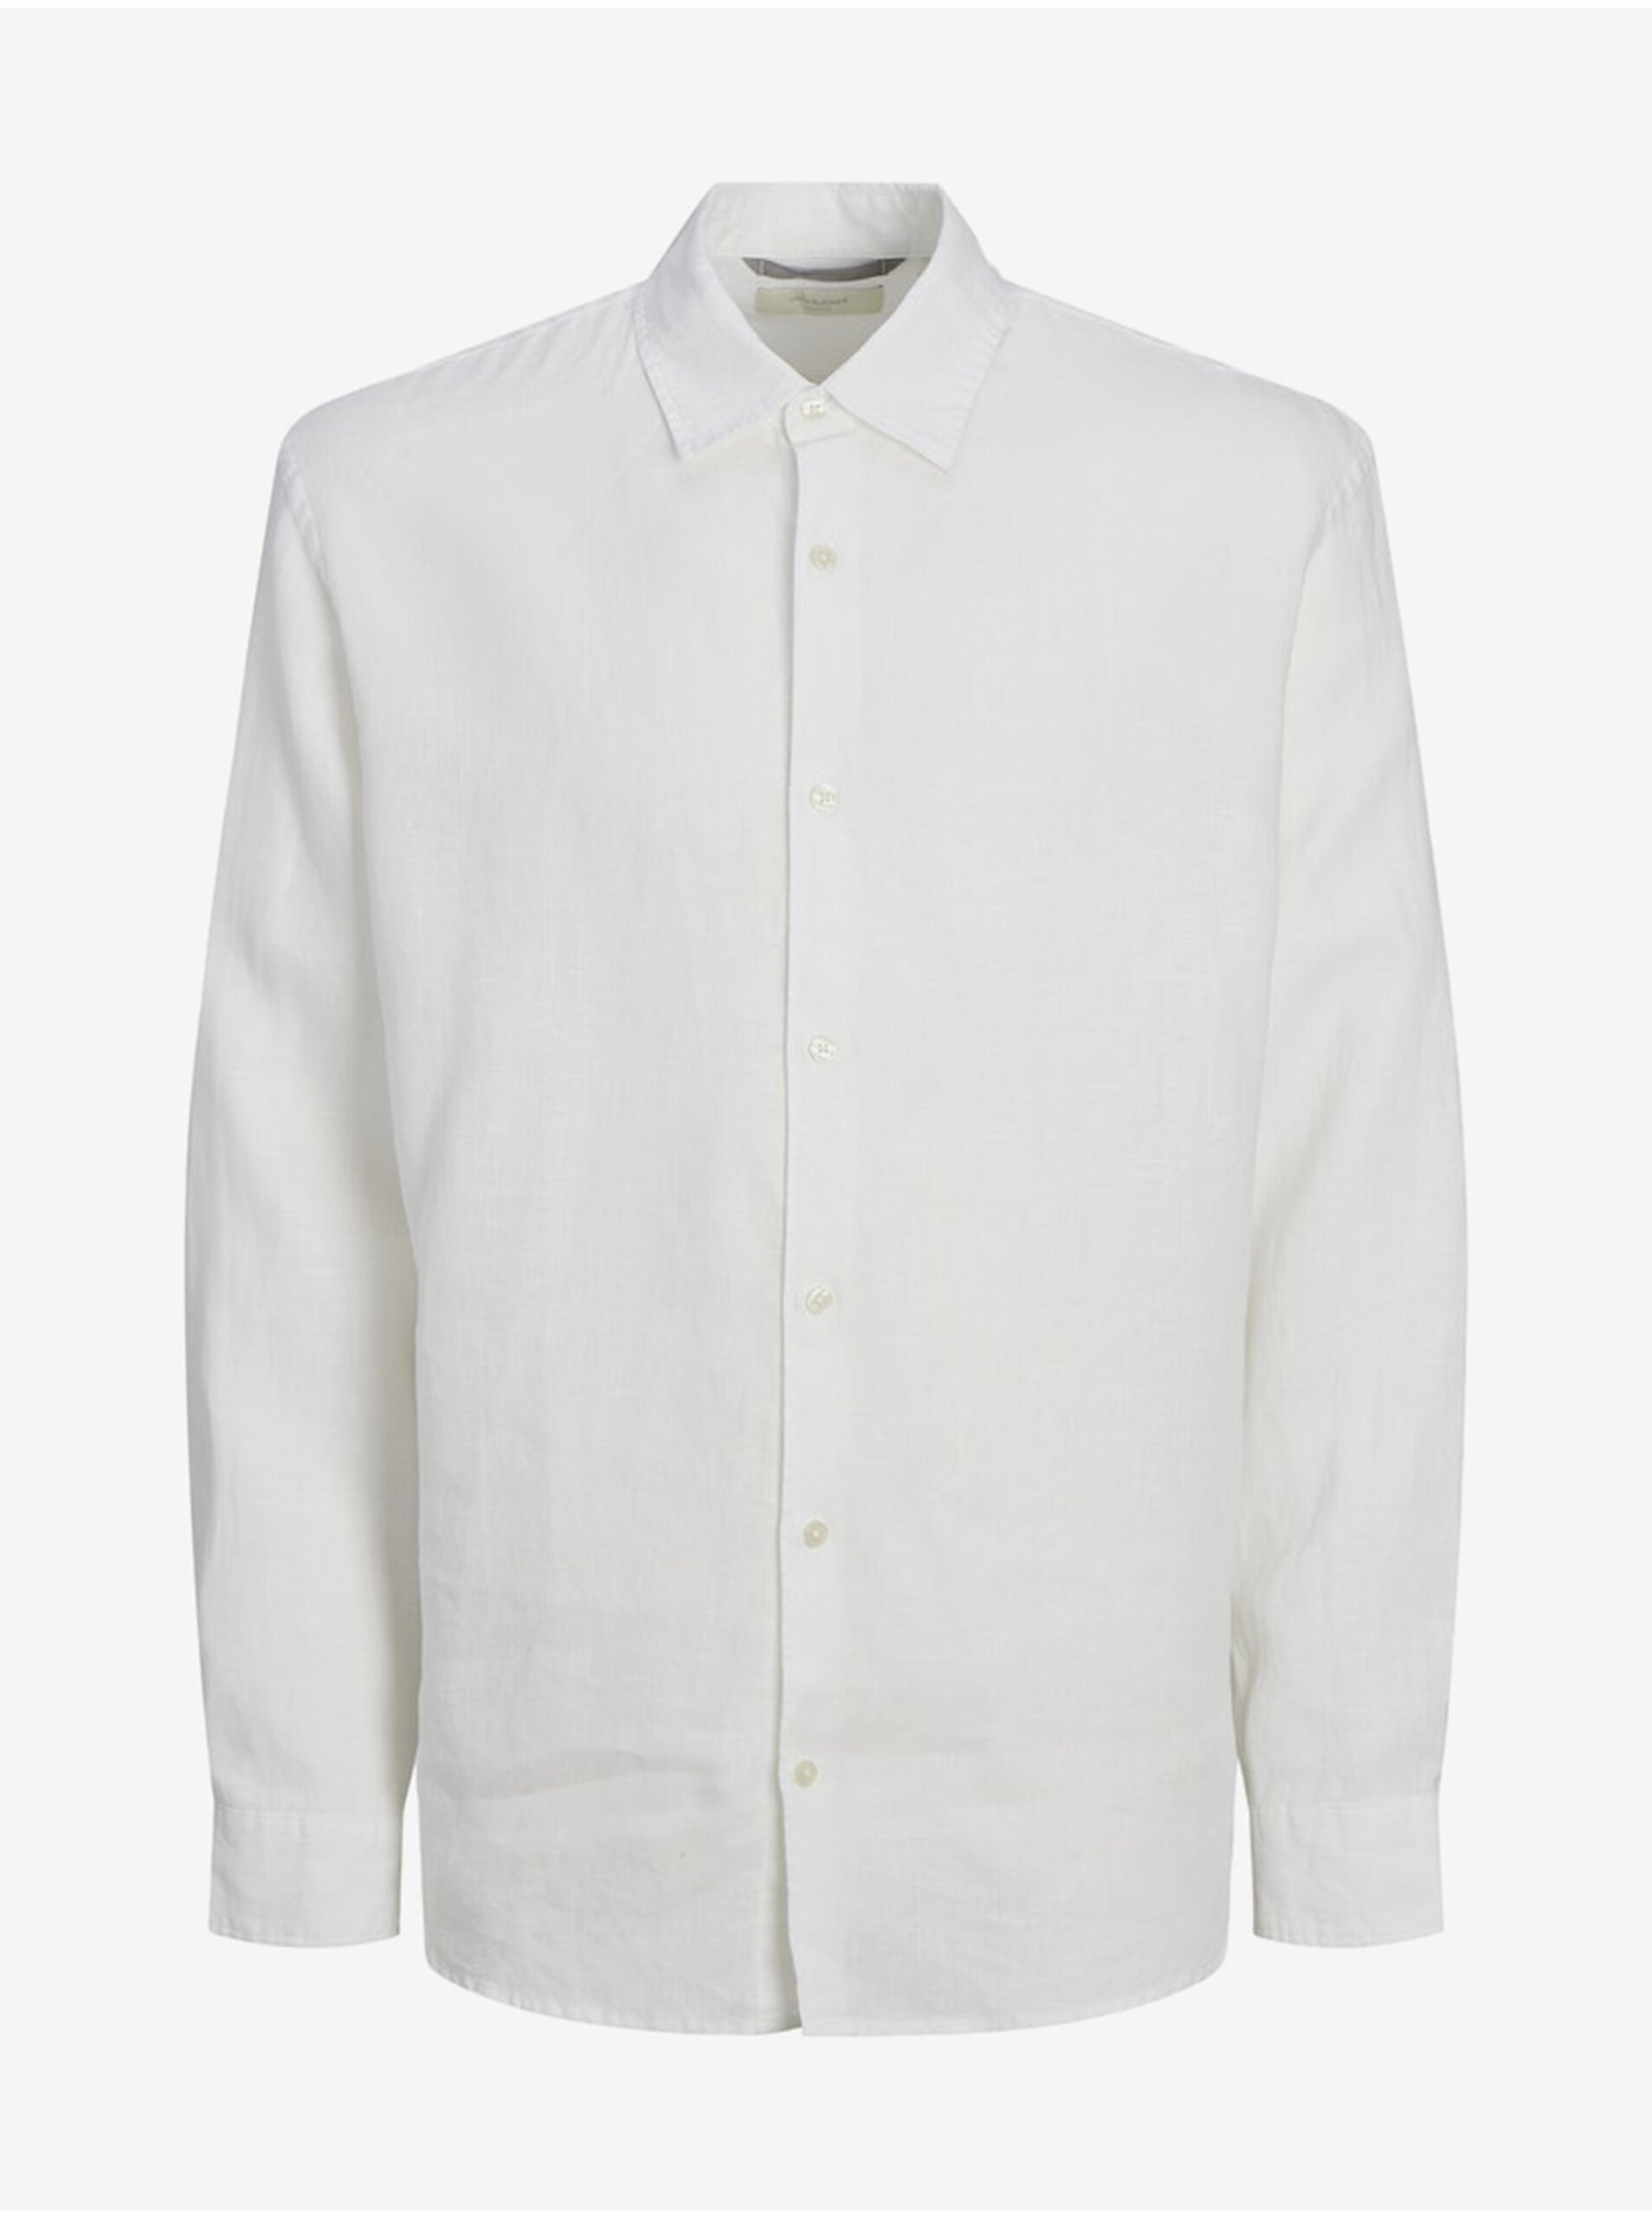 Bílá pánská lněná košile Jack & Jones Lawrence - Pánské